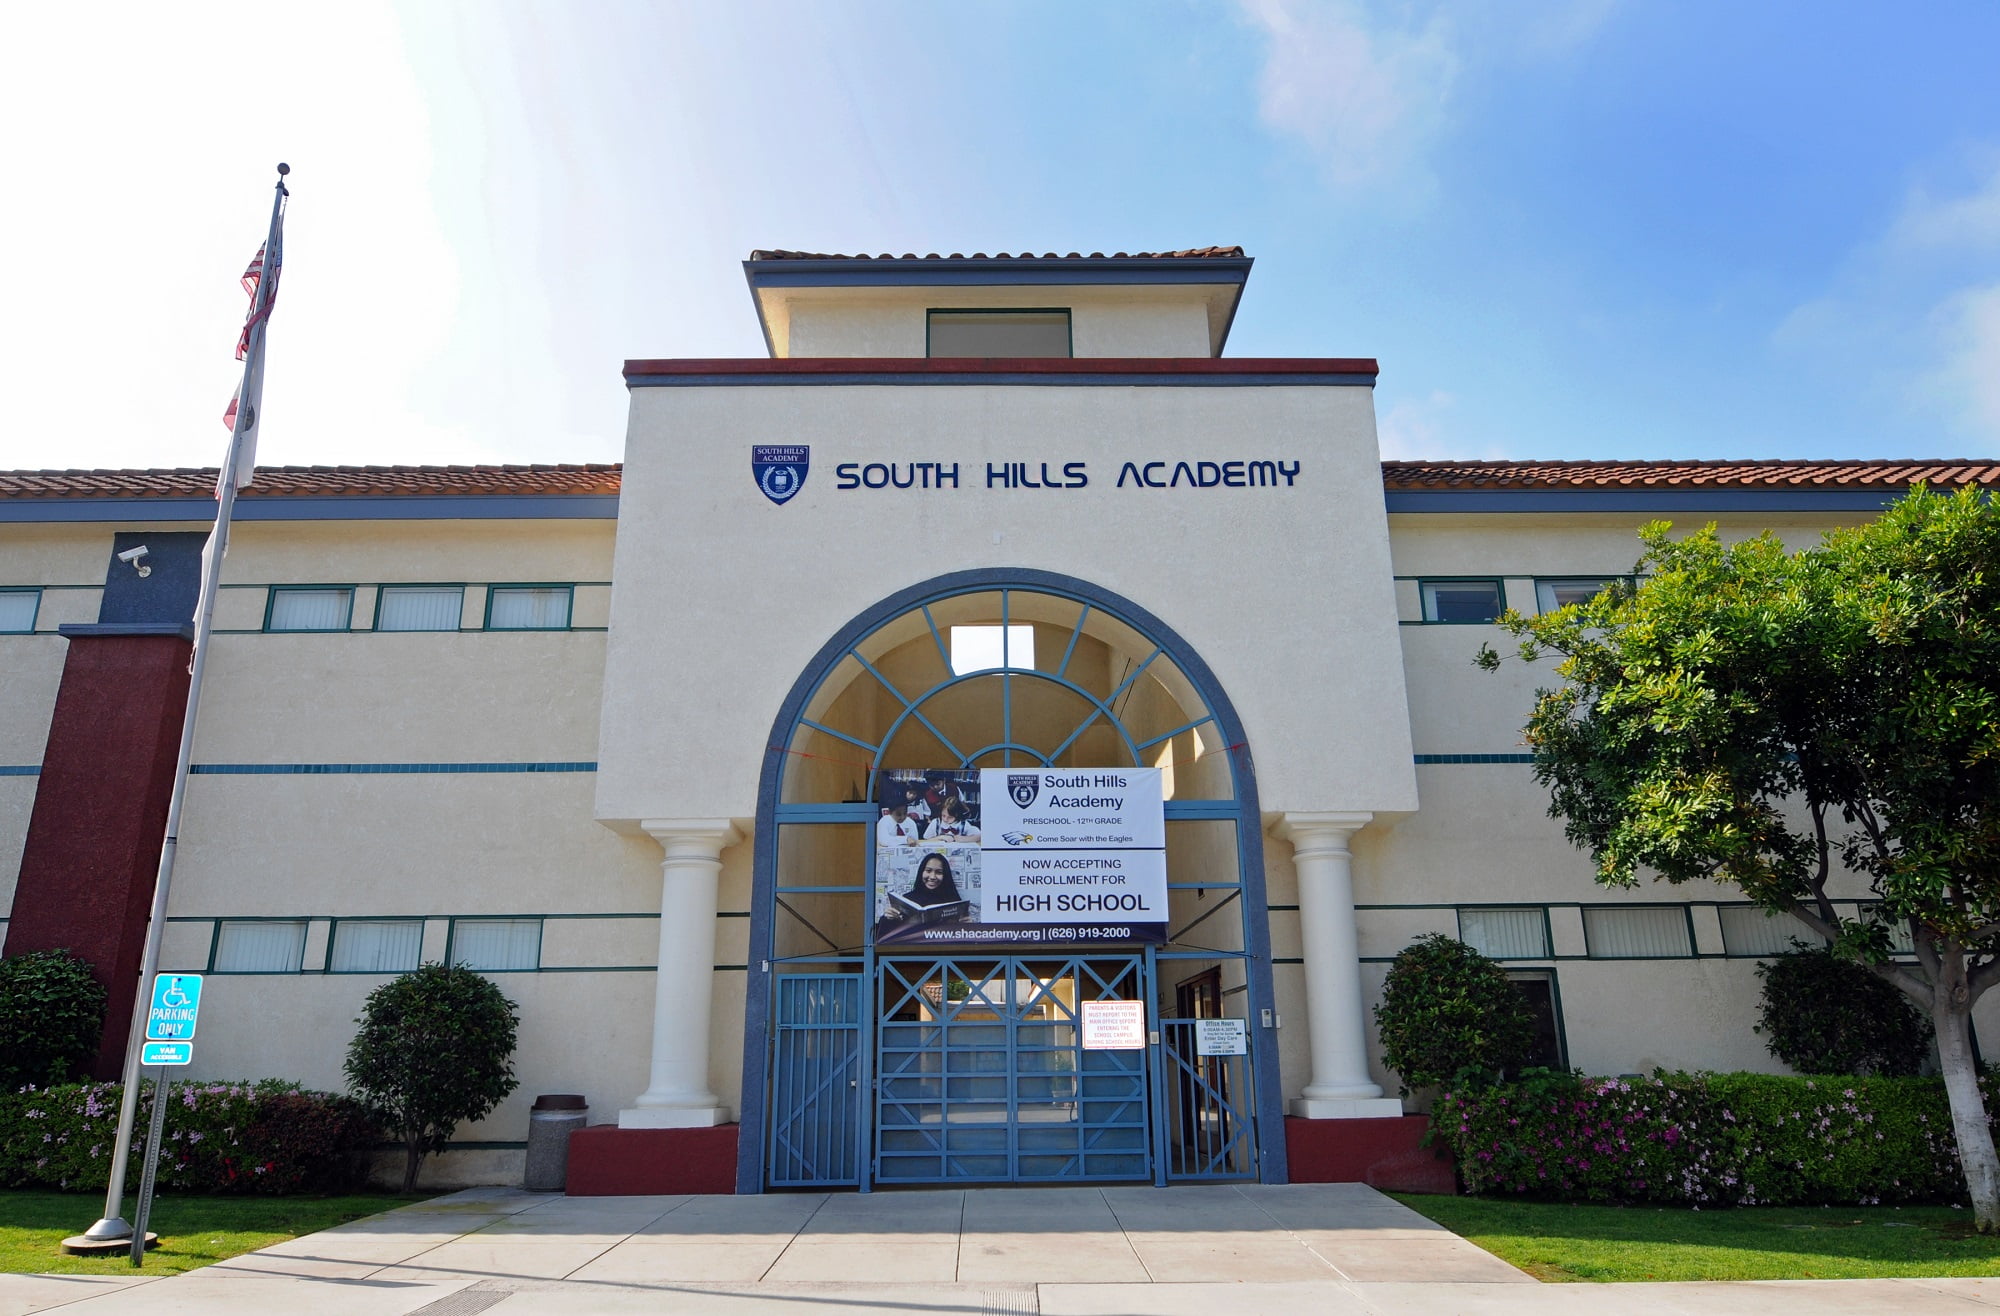 加州私立小學中學South Hills Academy南麓私立學校，核發I20提供住宿 I ACE留學遊學代辦